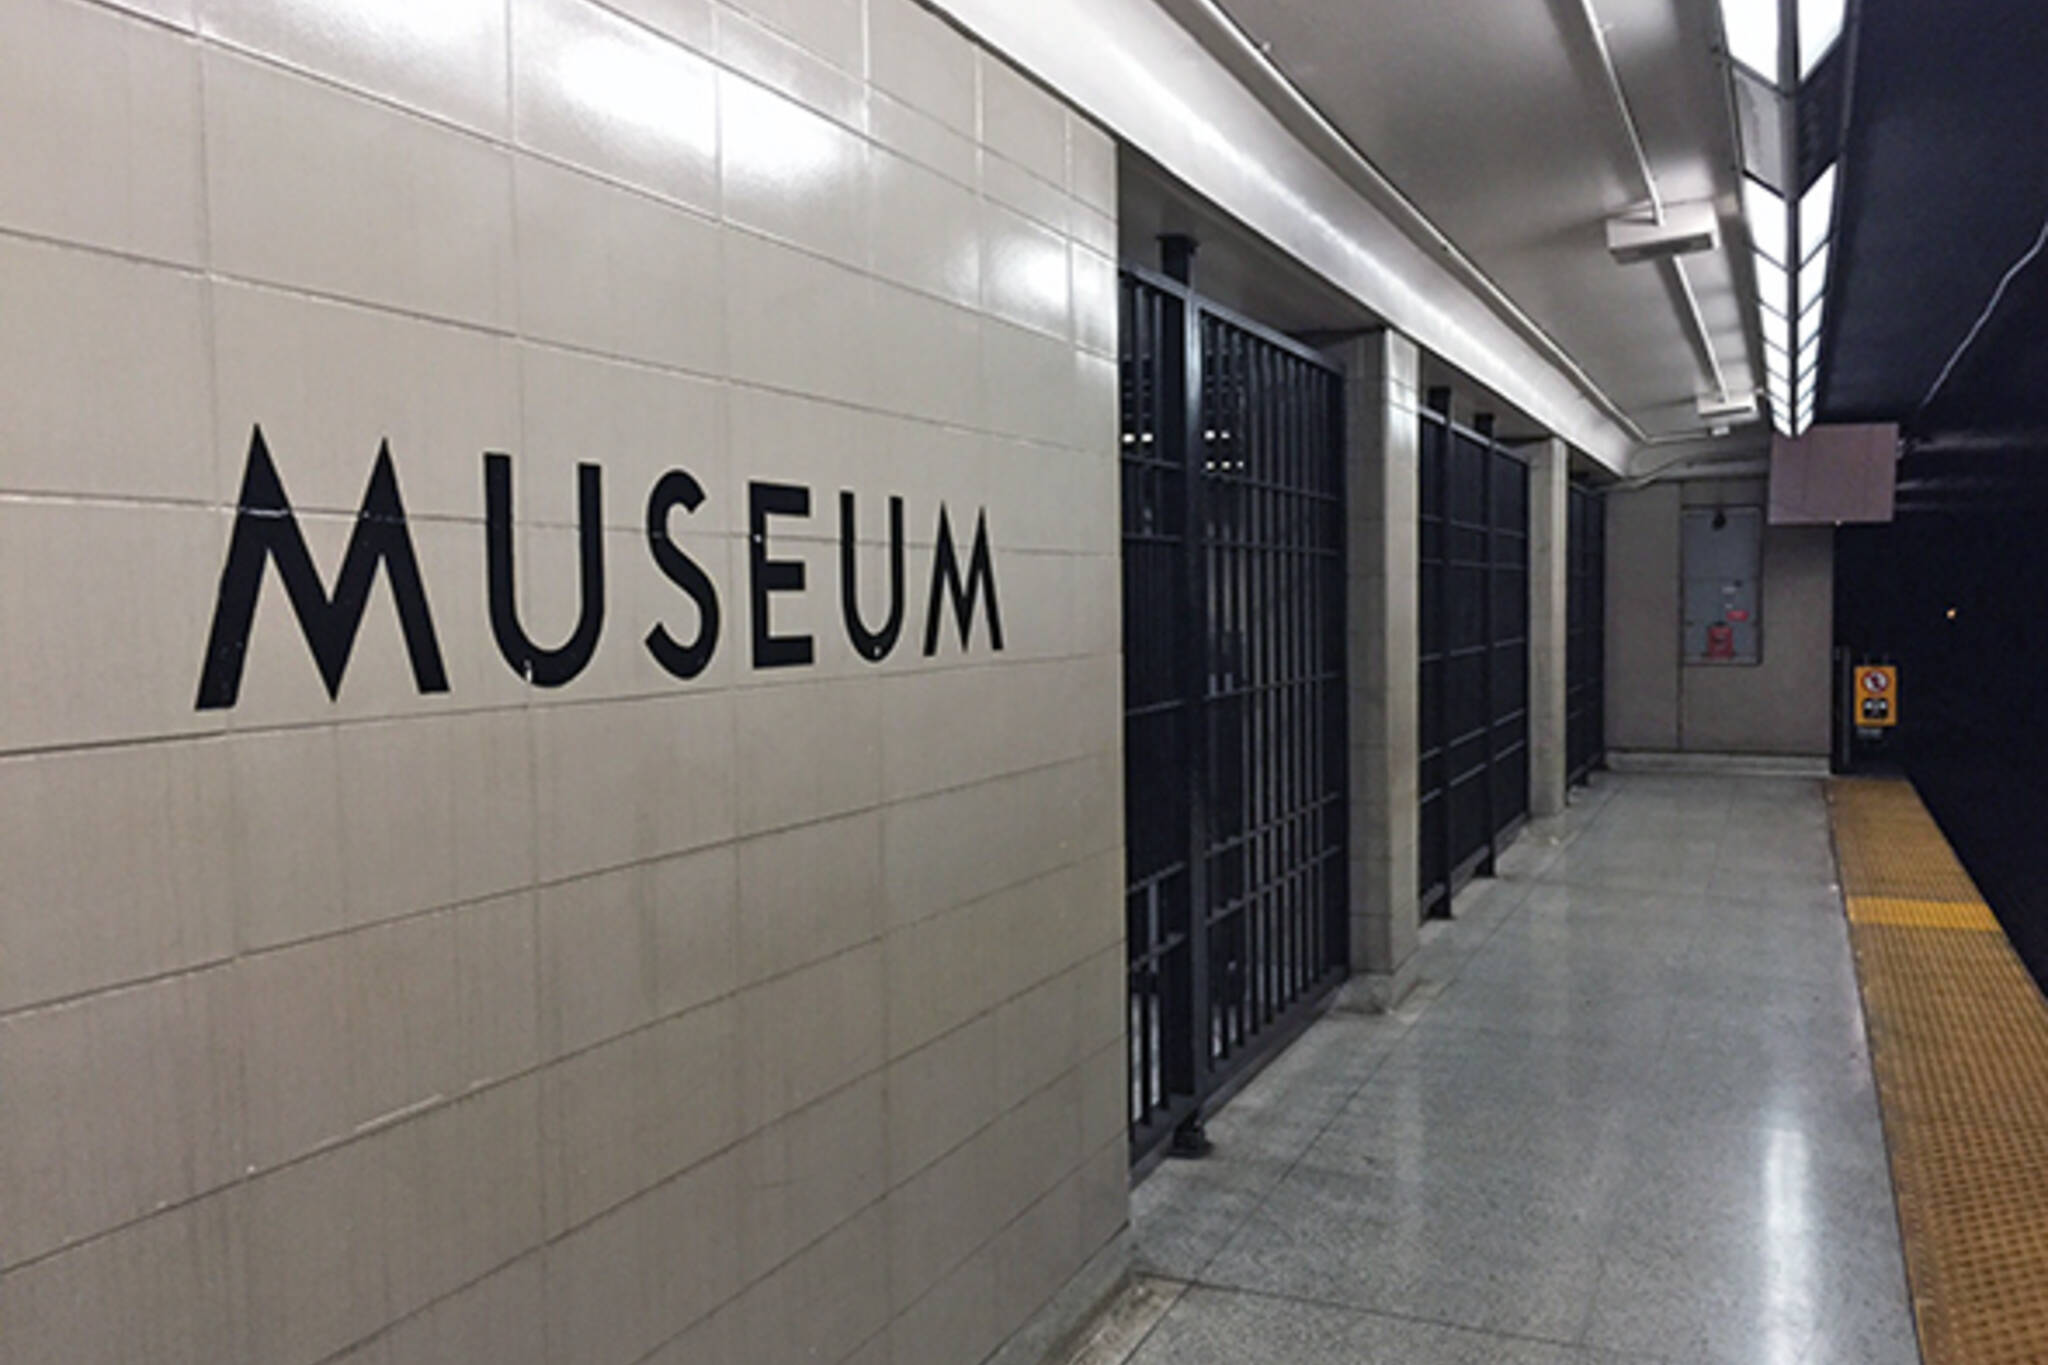 mueseum station jail